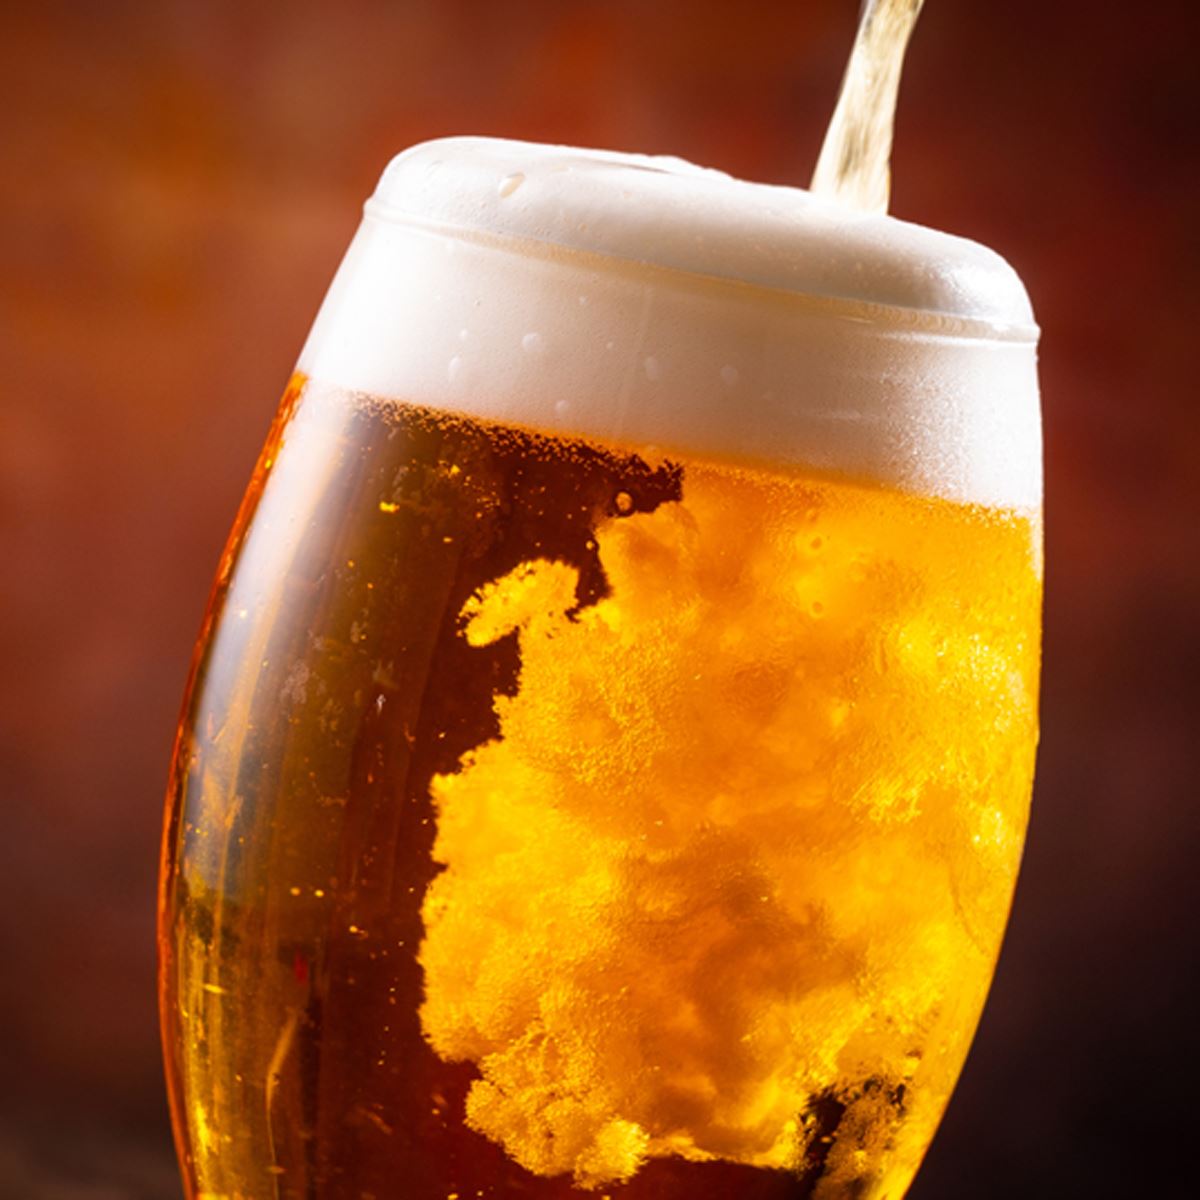 ビール系飲料 の酒税一本化で 10月からビールが安く 新ジャンルは高くなる 価格 Comマガジン